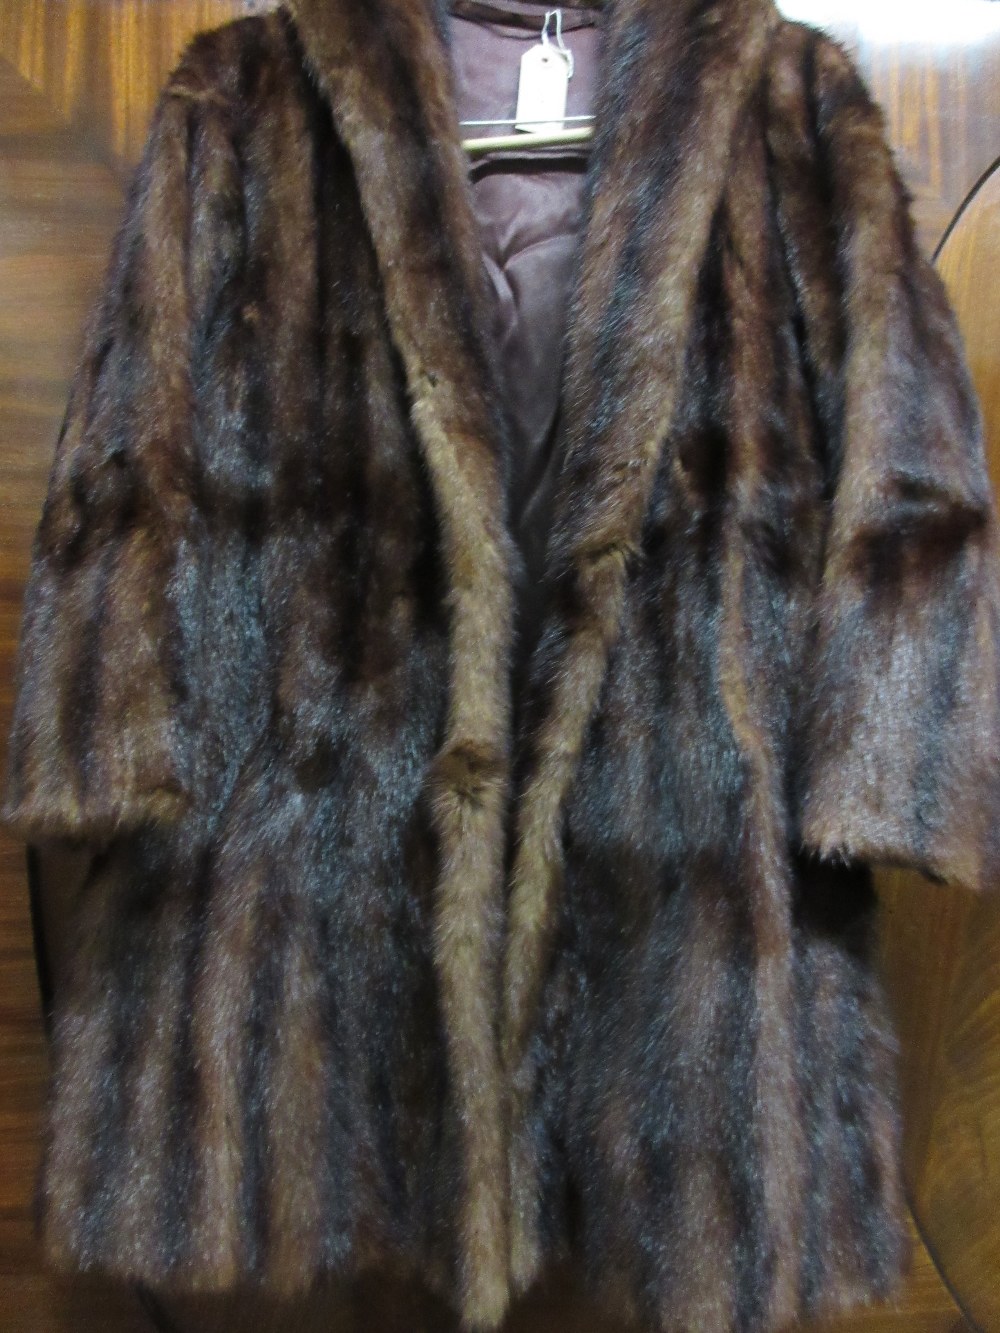 Ladies dark brown fur jacket together with a ladies black astrakan fur jacket